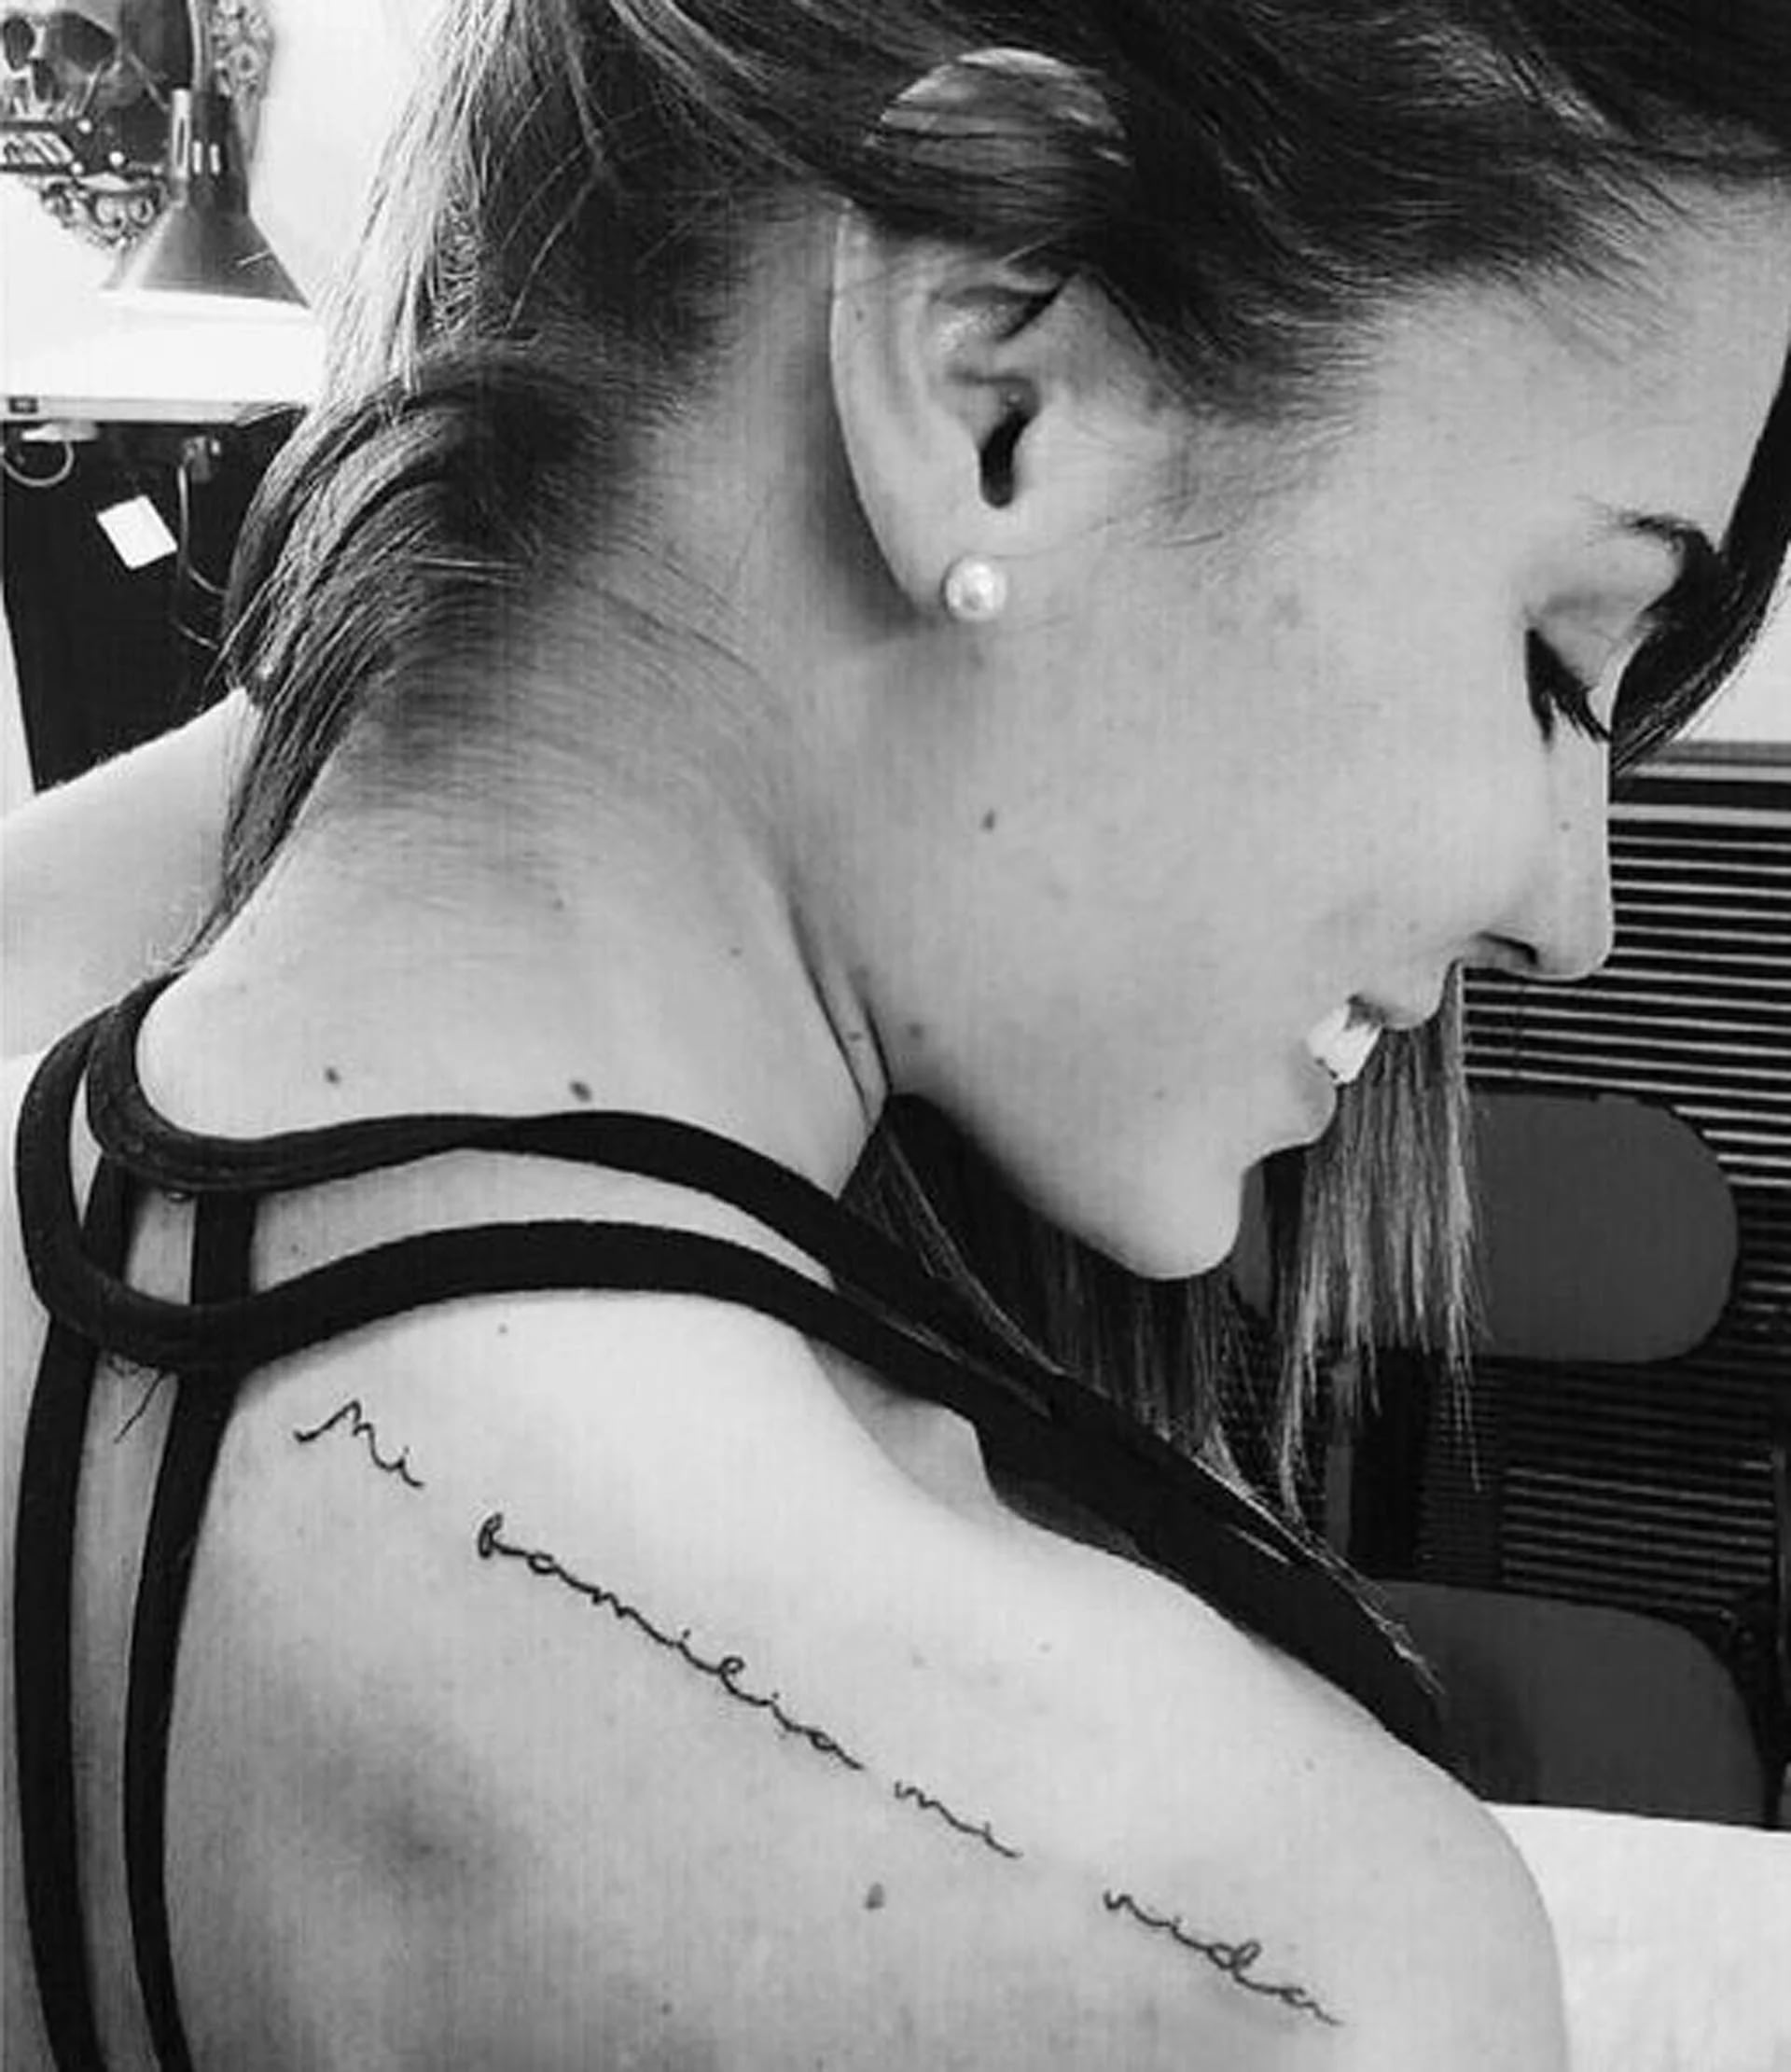 “Mi familia, mi vida”, reza su tatuaje